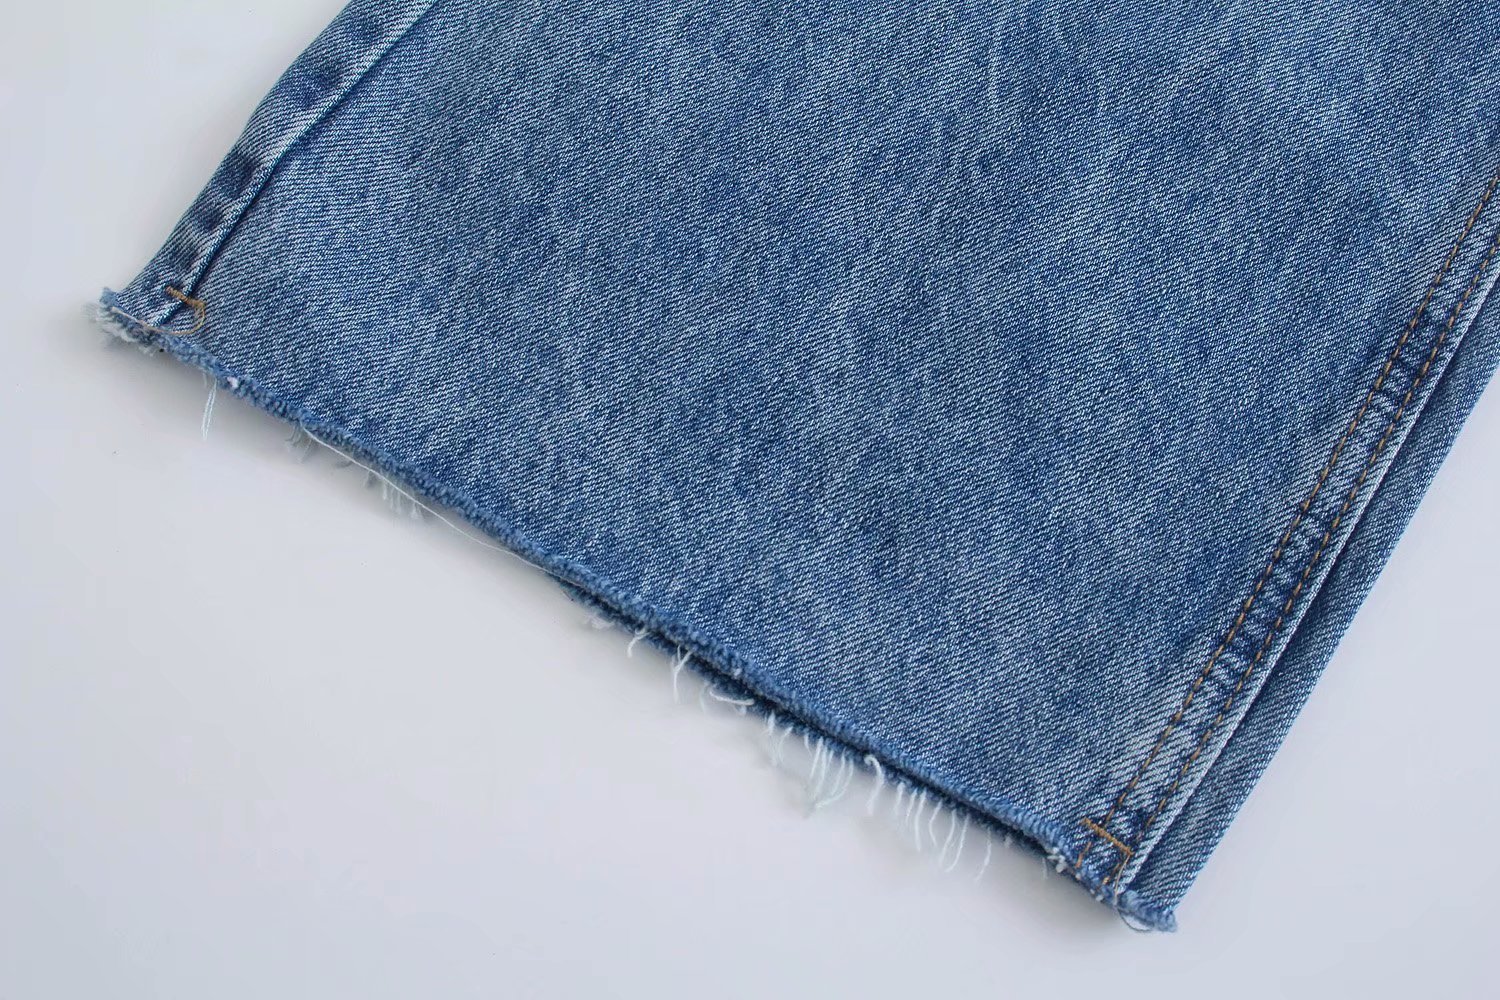 jeans de pierna ancha rasgados lavados para mujer nihaostyles ropa al por mayor NSAM77796